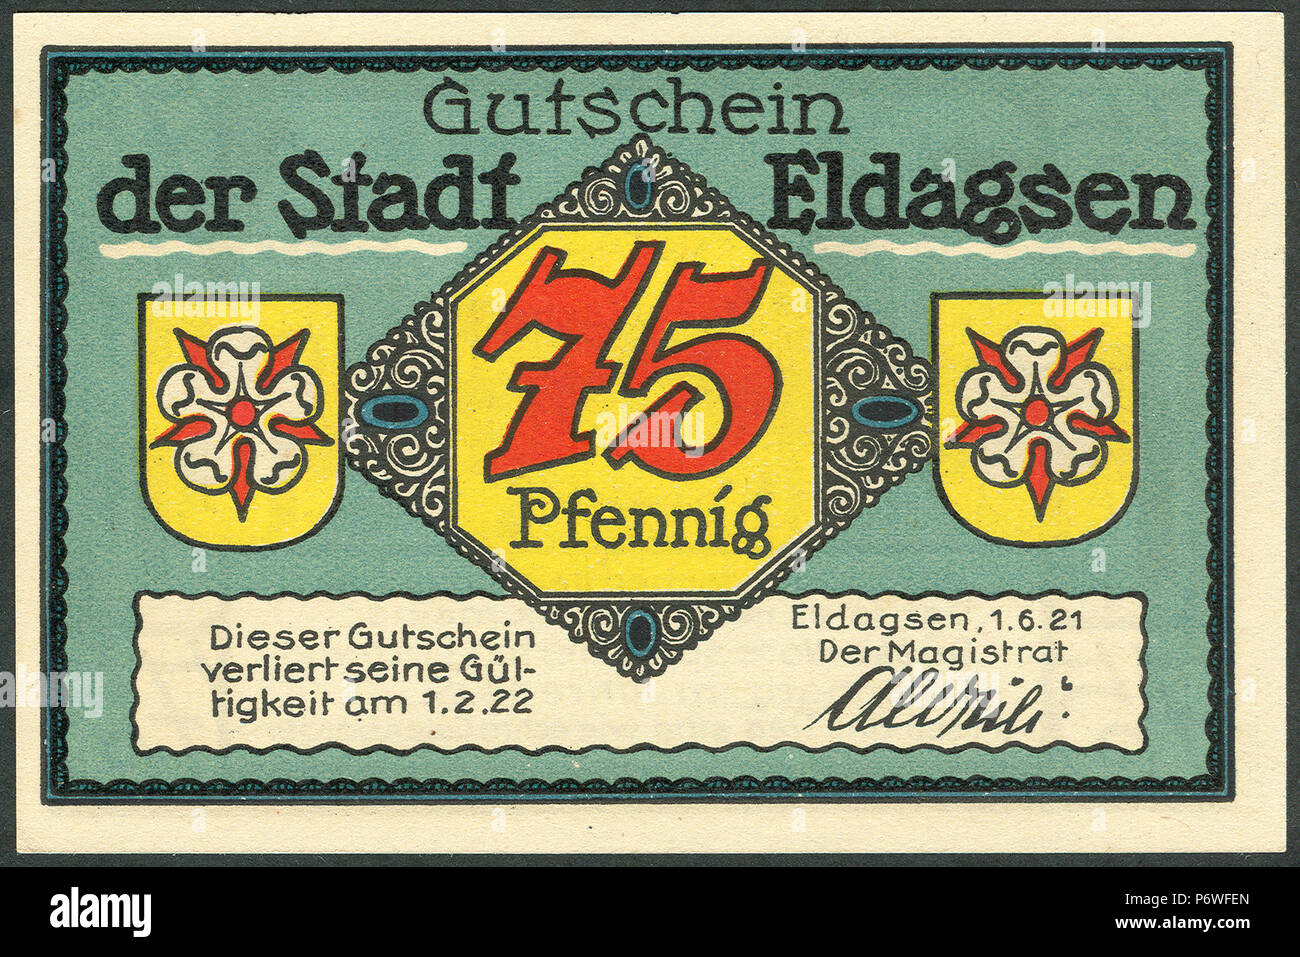 1921-06-01 Gutschein der Stadt Eldagsen, 0,75 Mark 75 Pfennig, gültig bis 1. Februar 1922, a, faksimilierte Unterschrift der Magistrat. Stock Photo